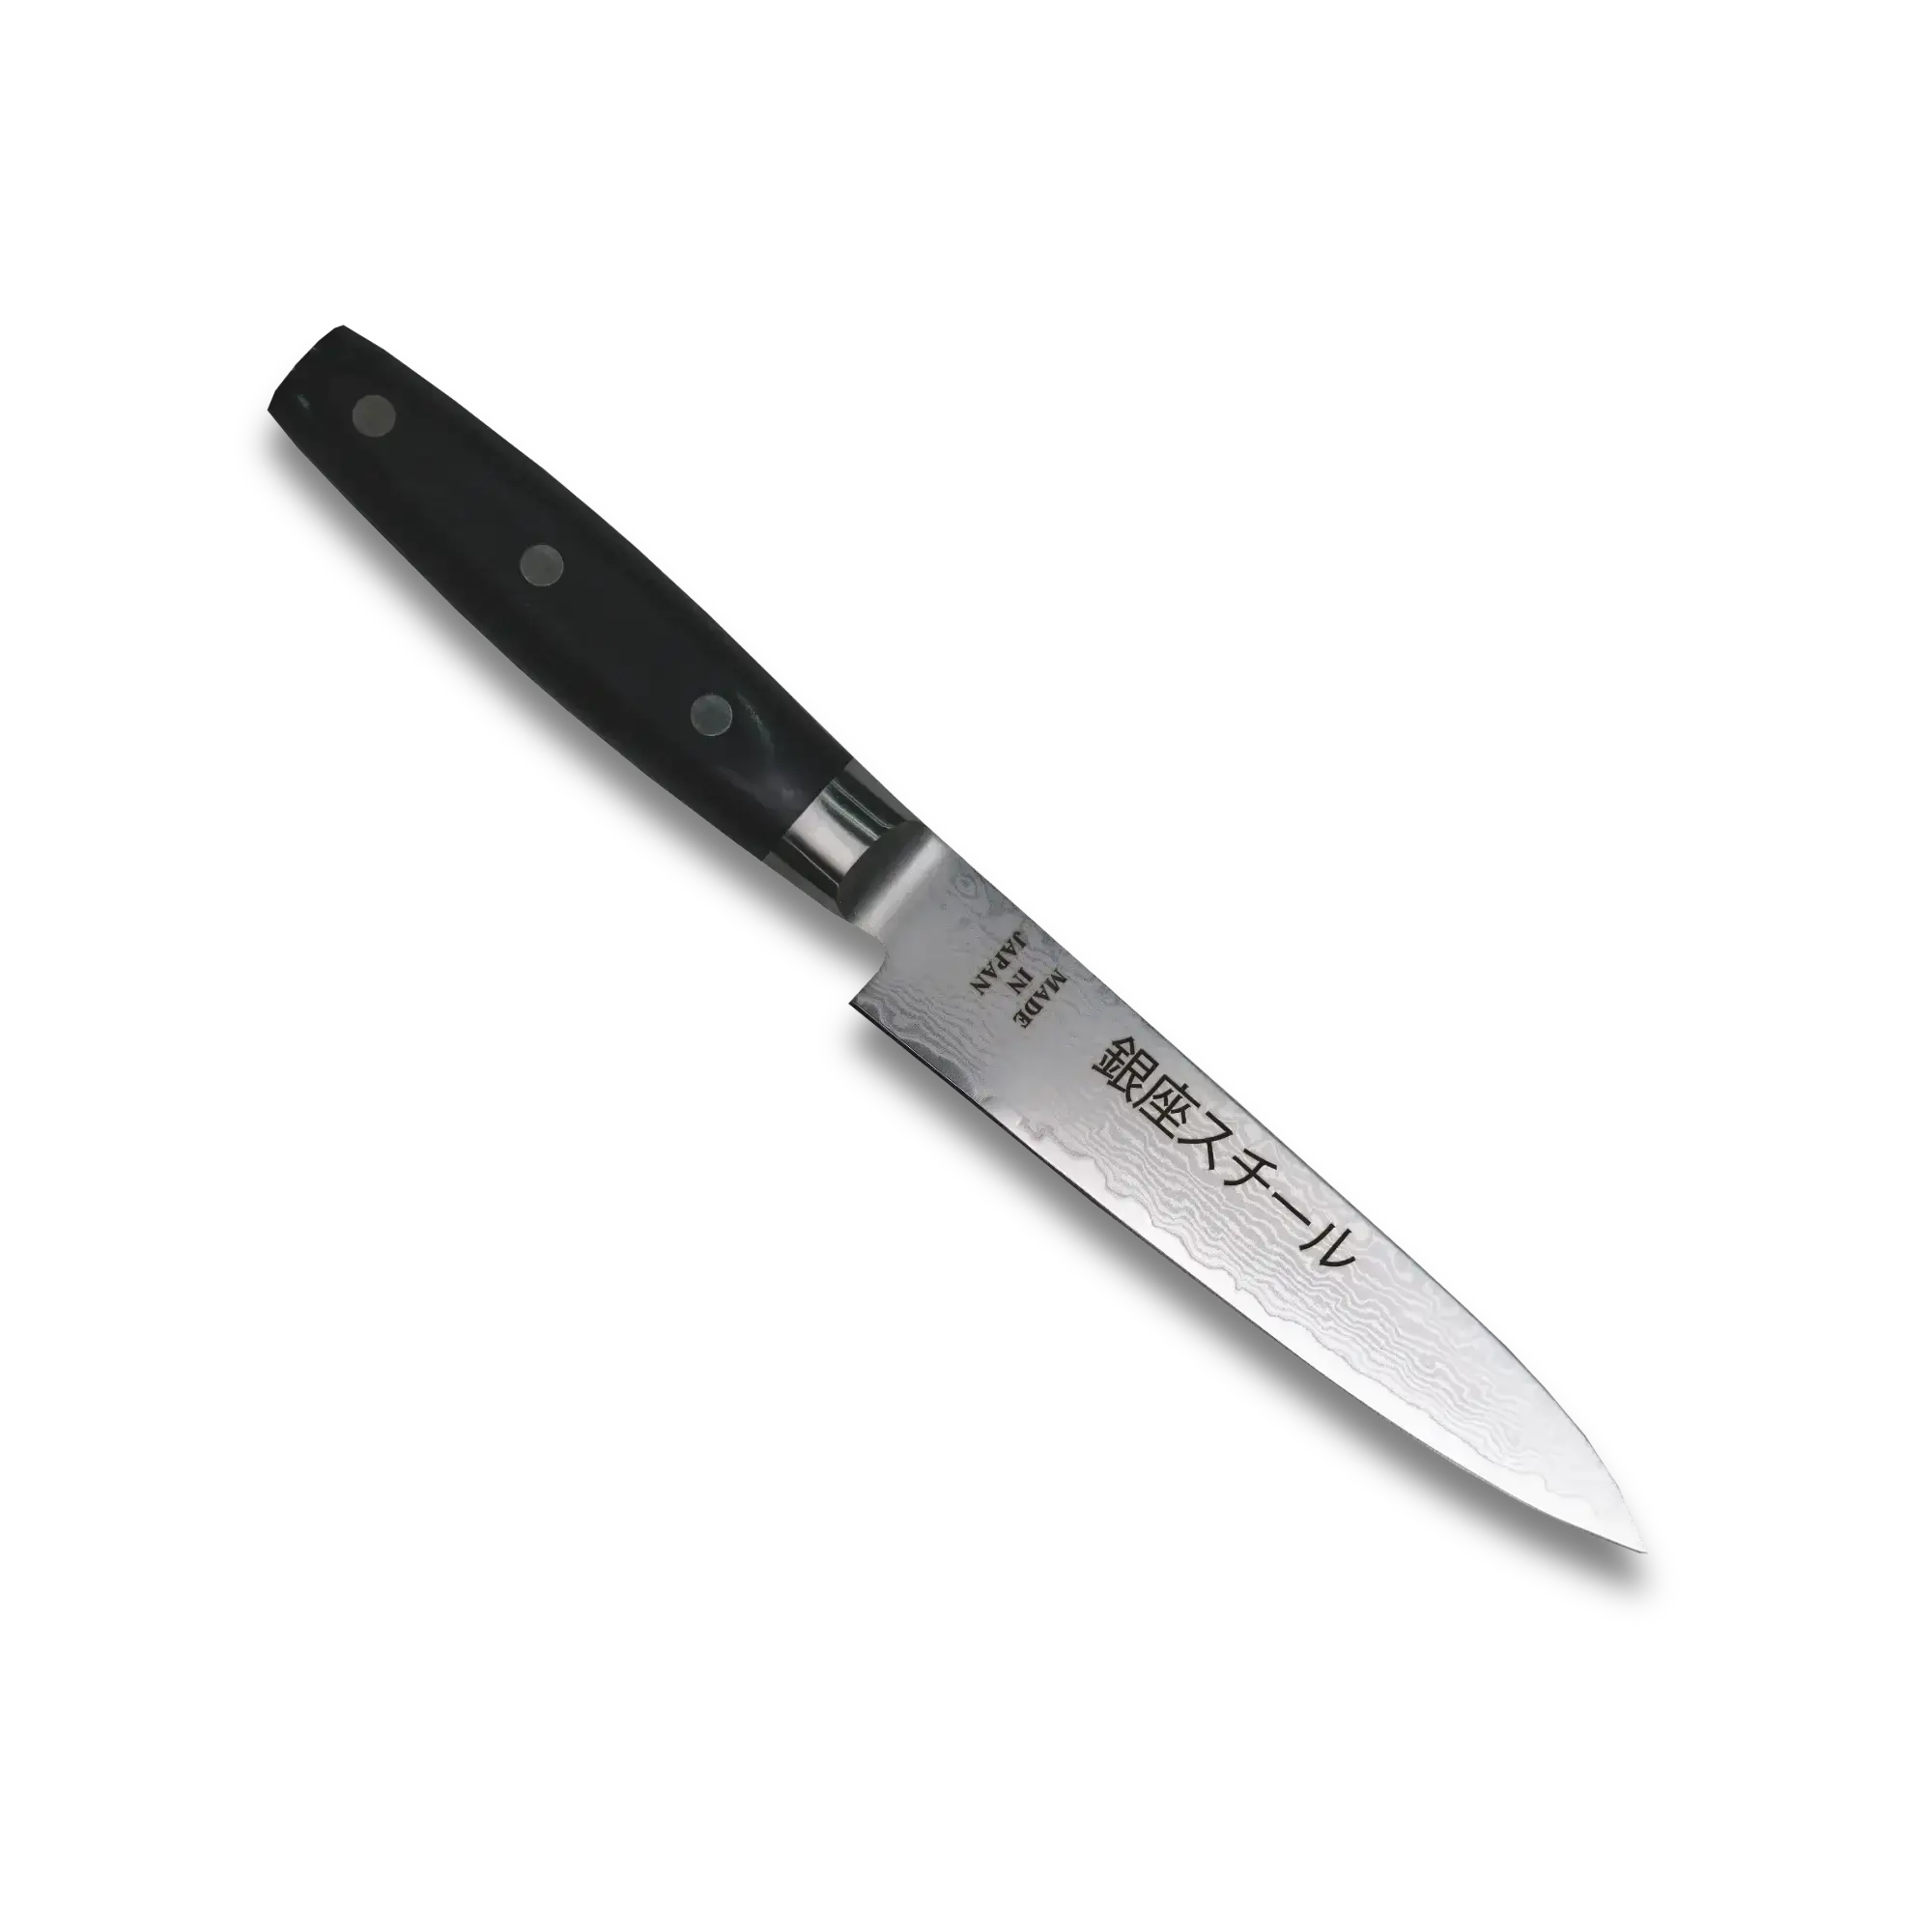 HAYAMI 130 - VG10 - 69 Layered Damascus Steel Petty Knife 130mm